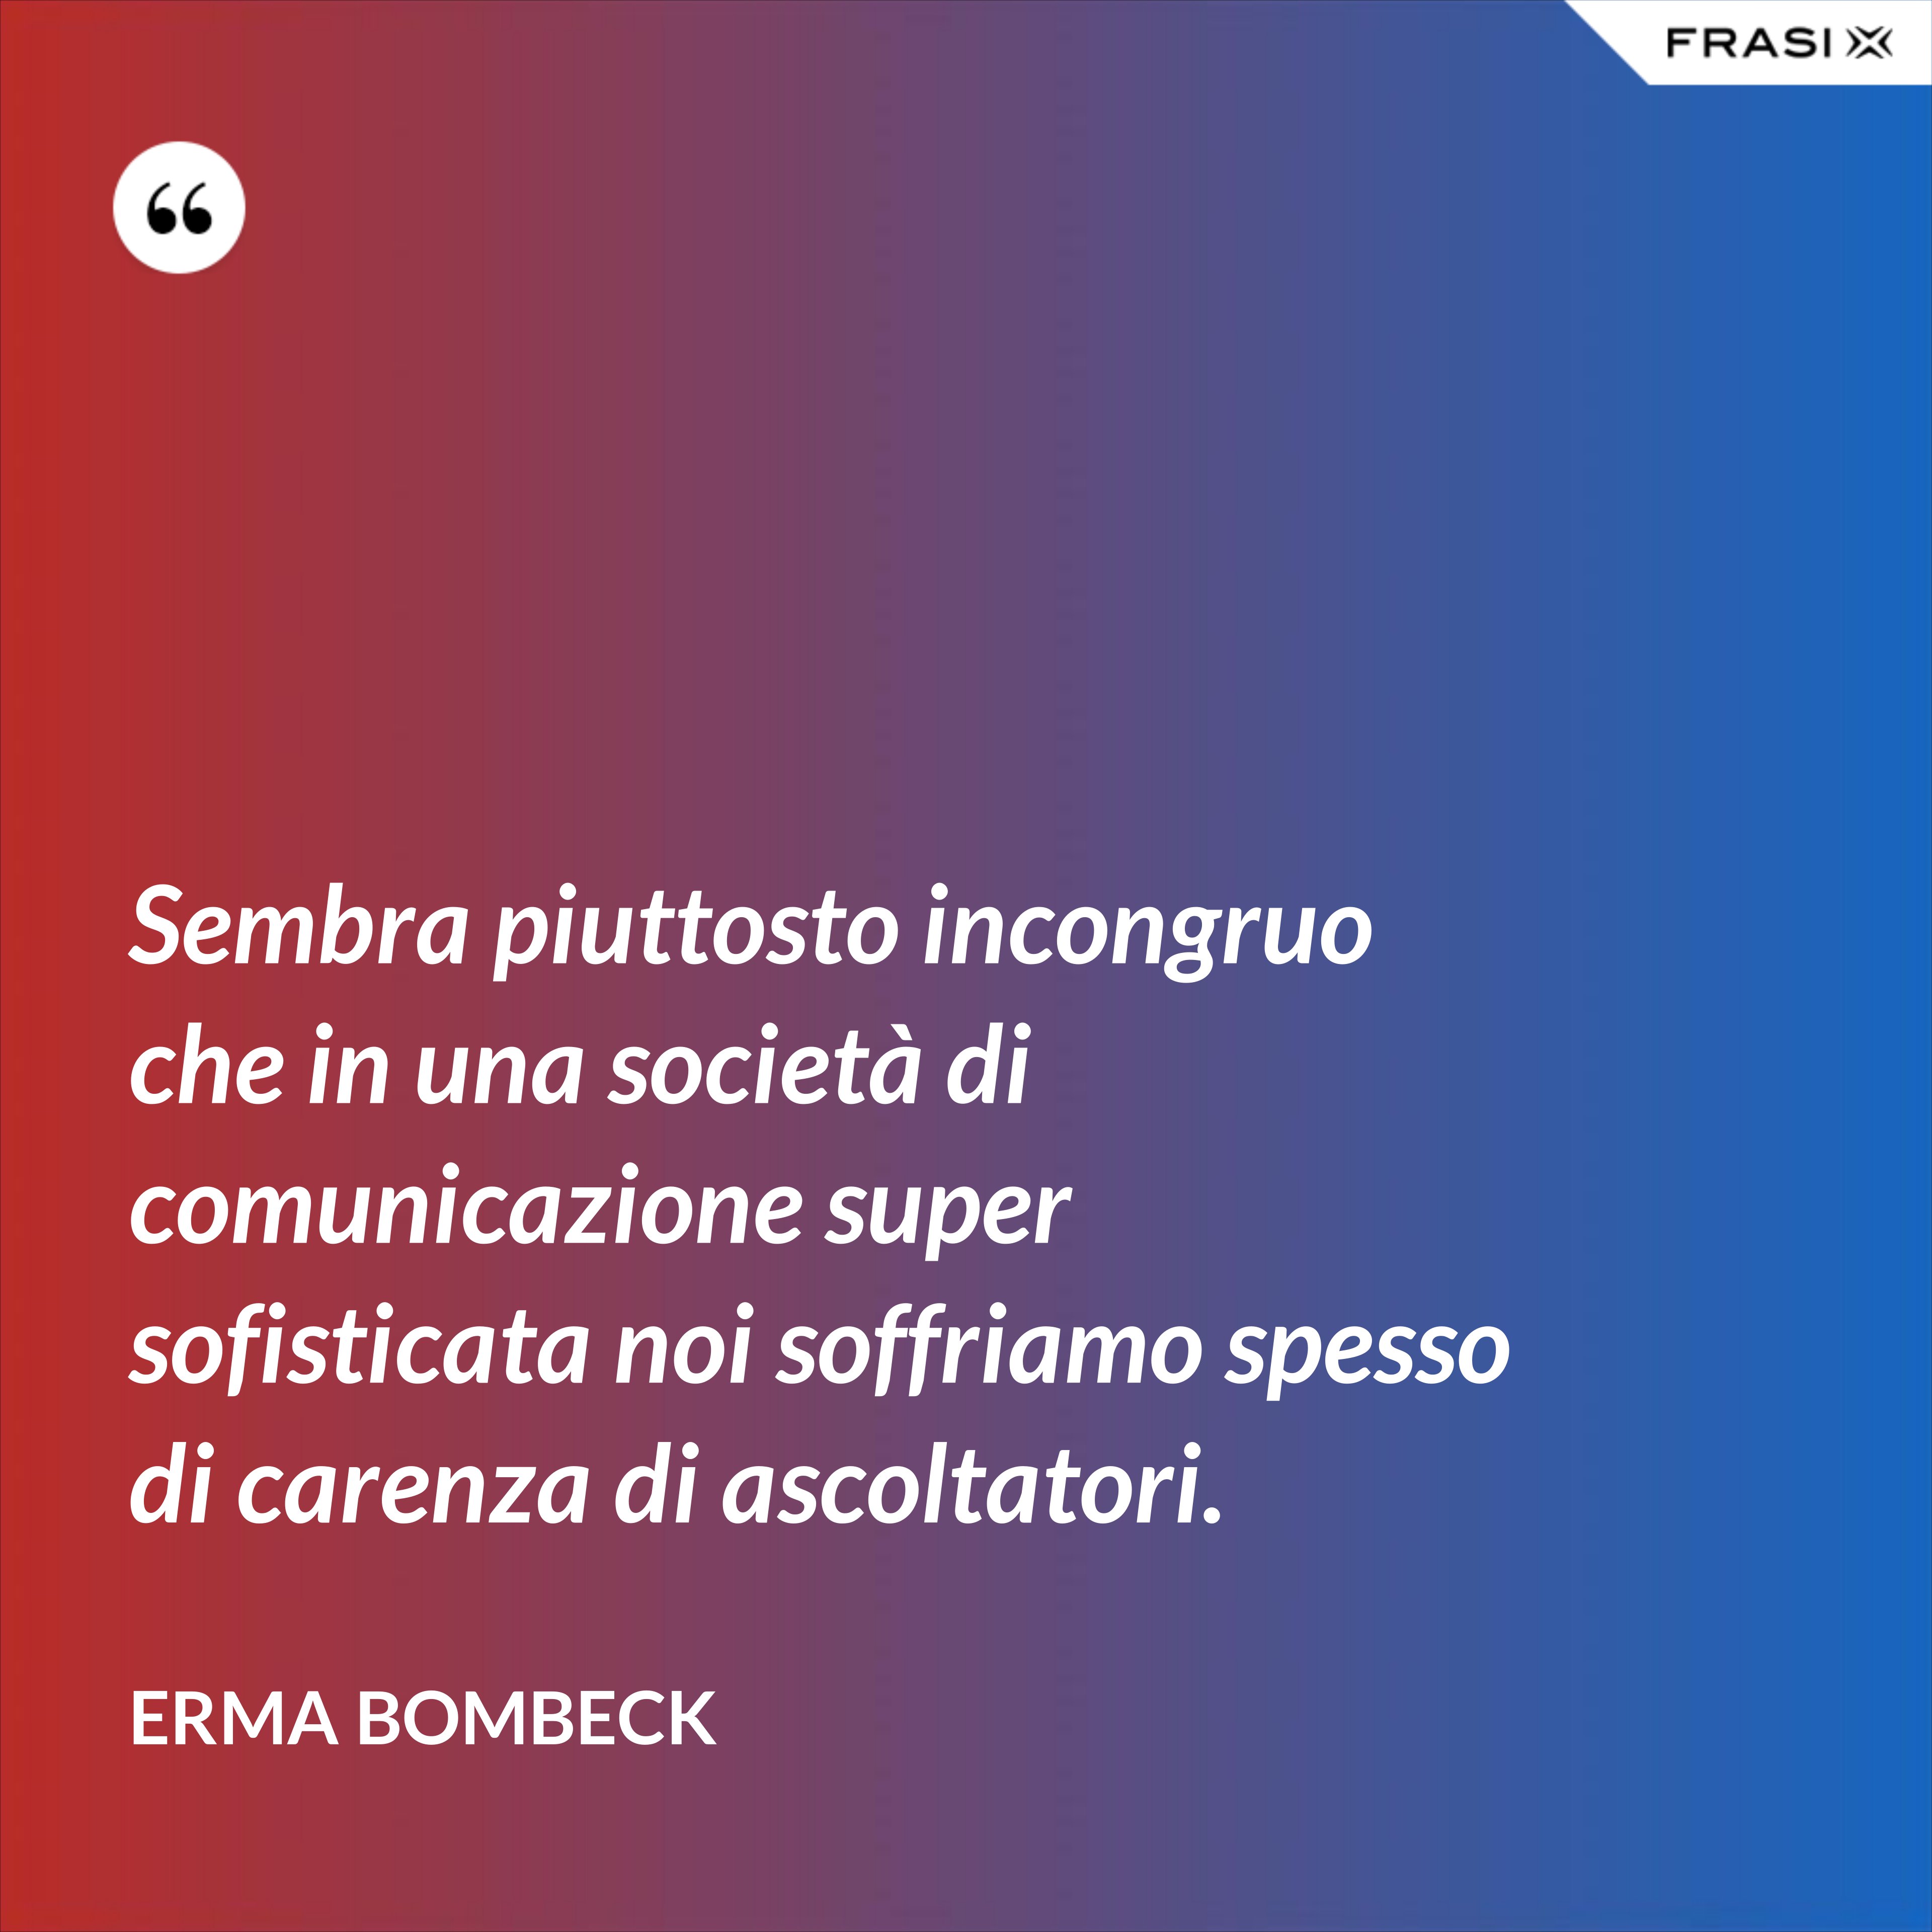 Sembra piuttosto incongruo che in una società di comunicazione super sofisticata noi soffriamo spesso di carenza di ascoltatori. - Erma Bombeck